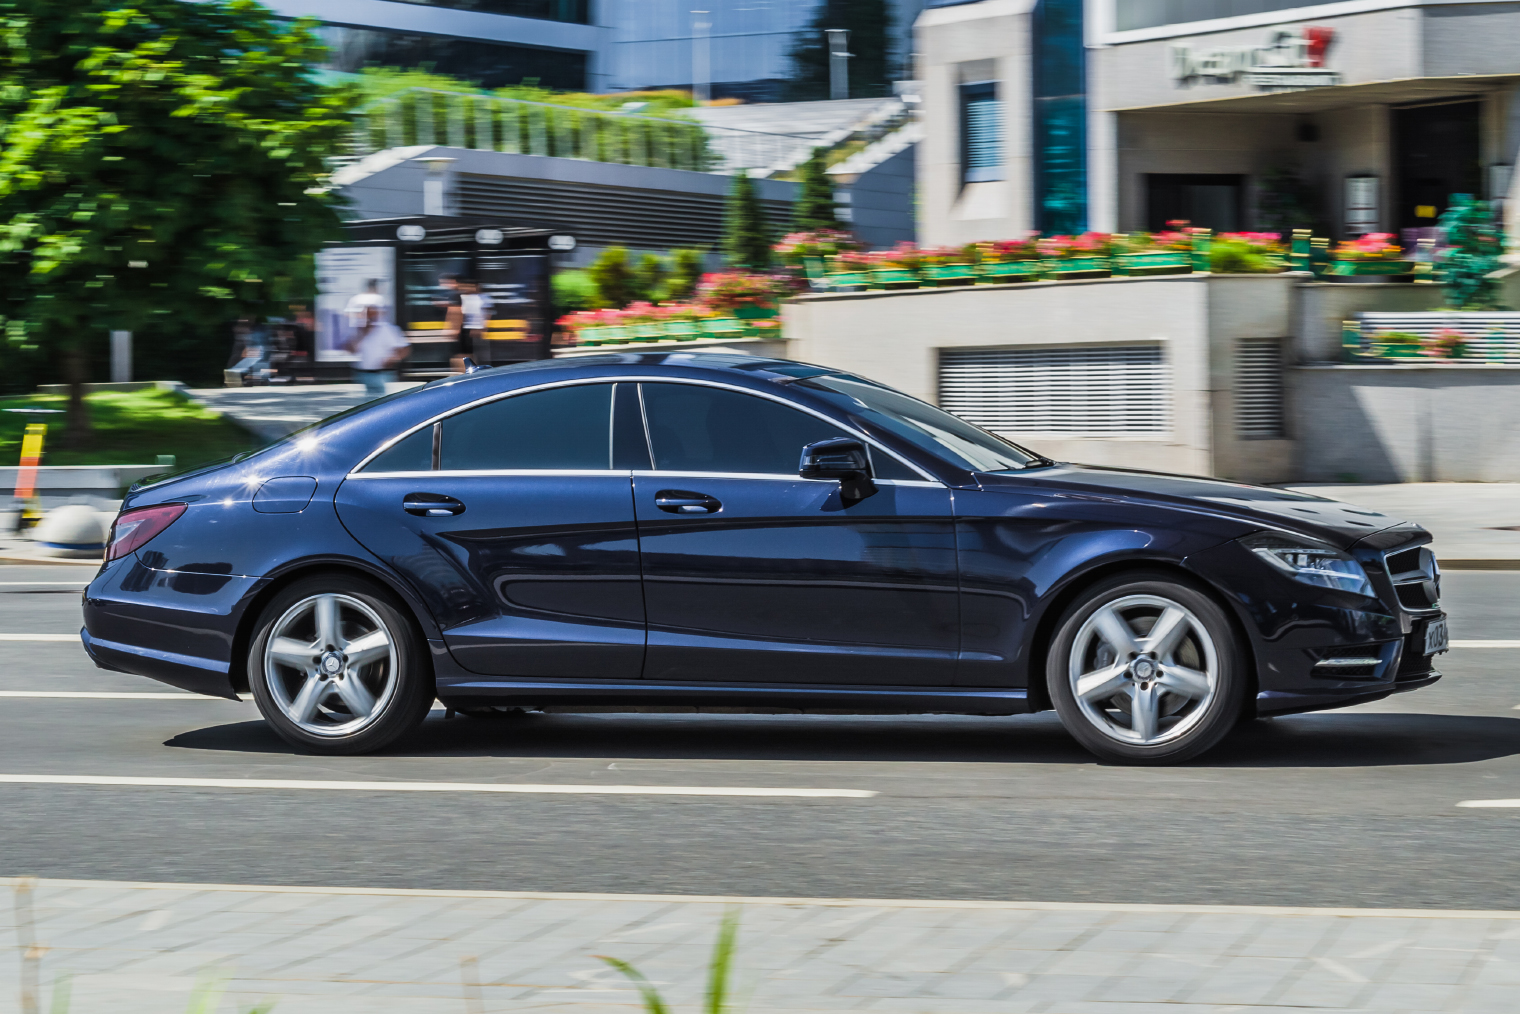 Mercedes CLS в профиль действительно похож на купе, но у него есть задние двери. Источник: Haggardous50000 / Shutterstock